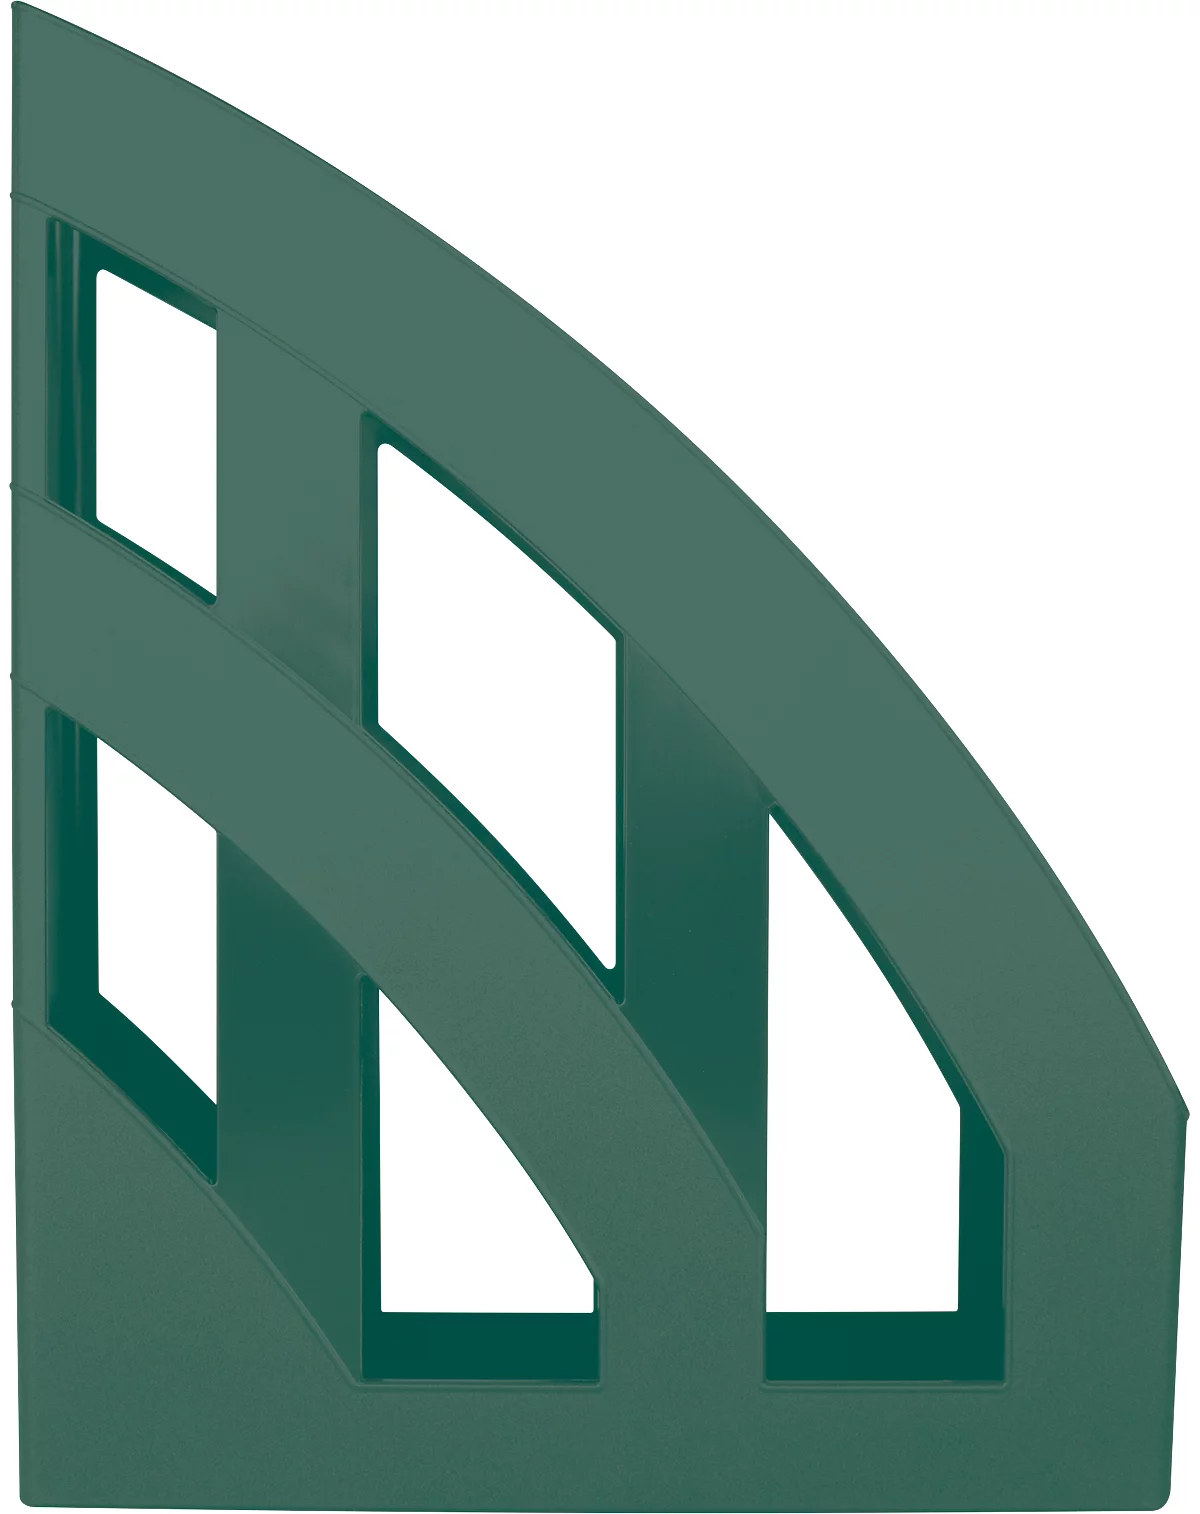 Tijdschriftenmap Helit The Green Bridge, voor A4-C4 formaat, rugbreedte 78 mm, gerecycled plastic, groen, 4 stuks.